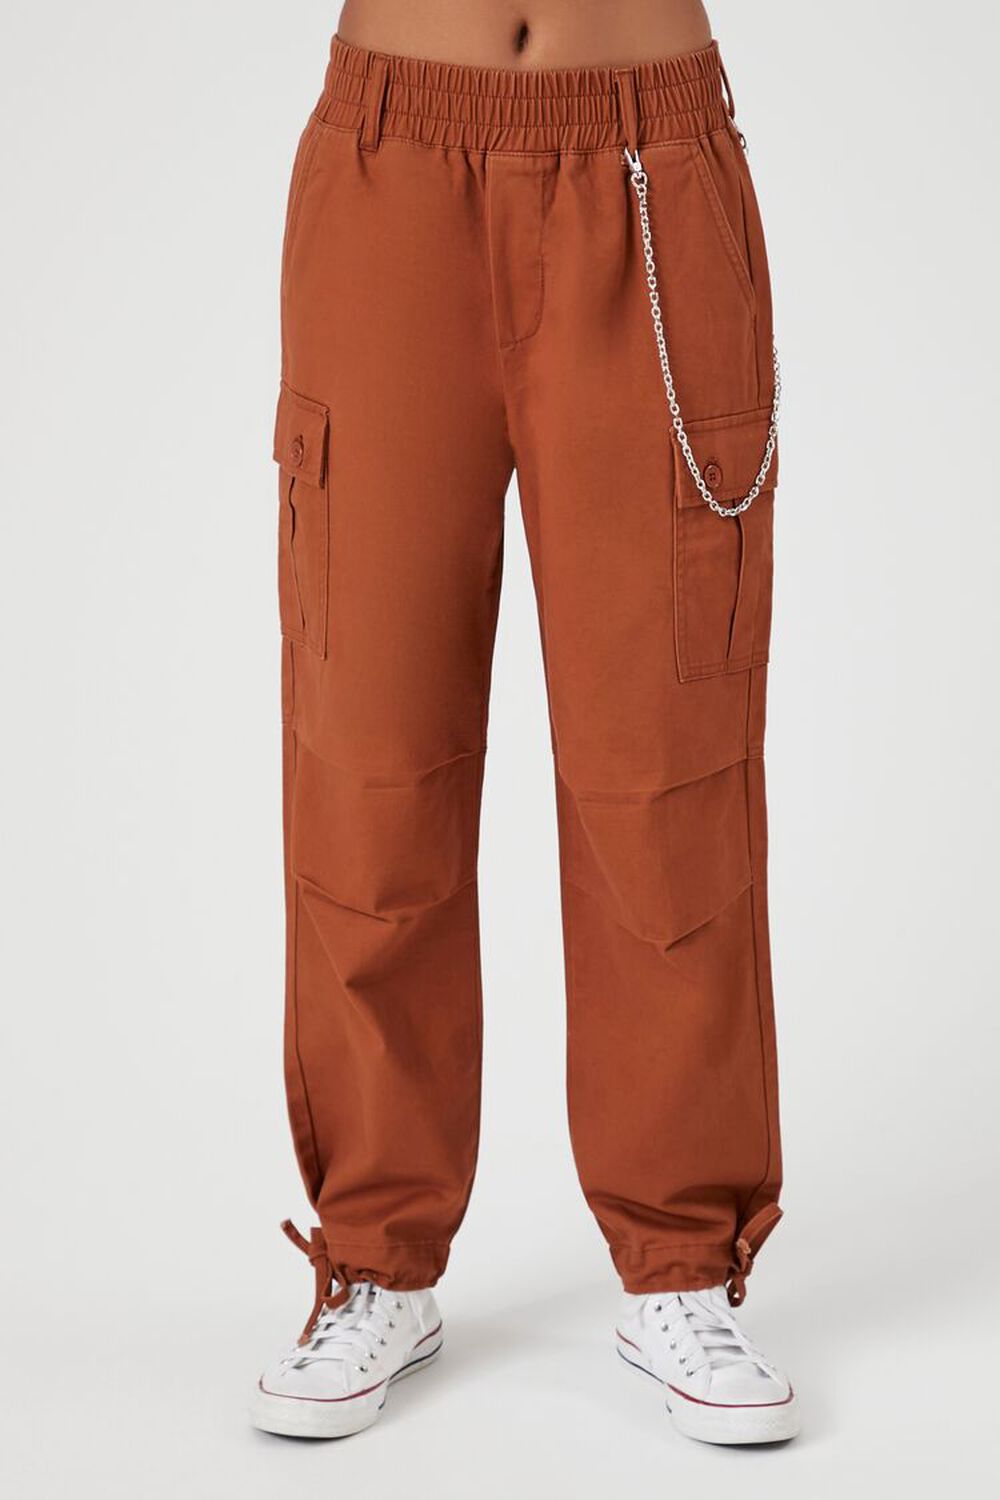 ROOT BEER Wallet Chain Tie-Hem Cargo Pants, image 2